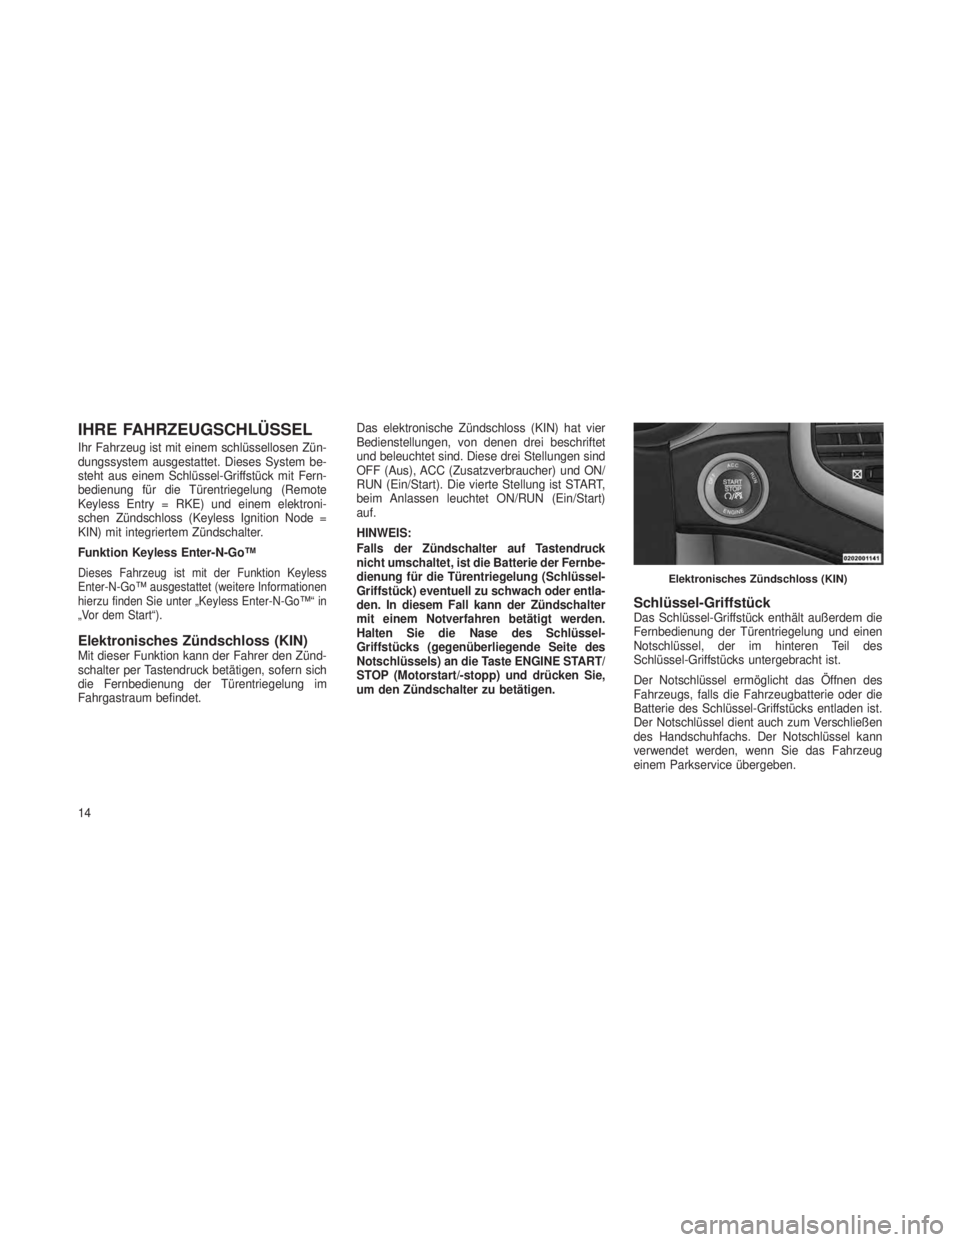 JEEP GRAND CHEROKEE 2013  Betriebsanleitung (in German) IHRE FAHRZEUGSCHLÜSSEL
Ihr Fahrzeug ist mit einem schlüssellosen Zün-
dungssystem ausgestattet. Dieses System be-
steht aus einem Schlüssel-Griffstück mit Fern-
bedienung für die Türentriegelun